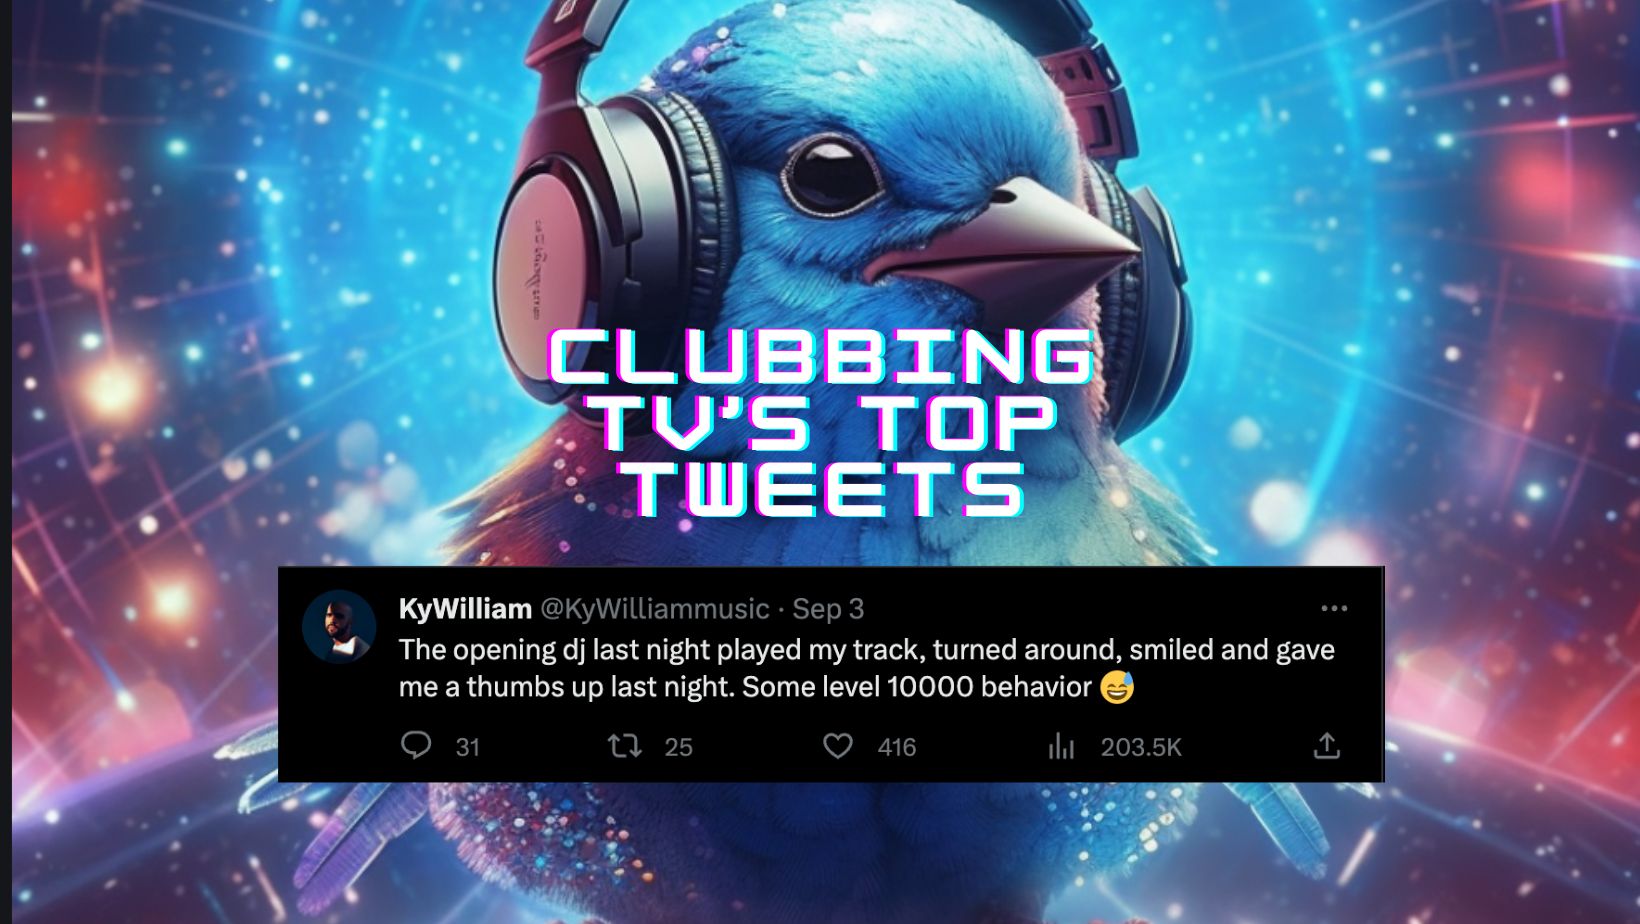 Clubbing Tv’s Top Tweets – Chapter 26